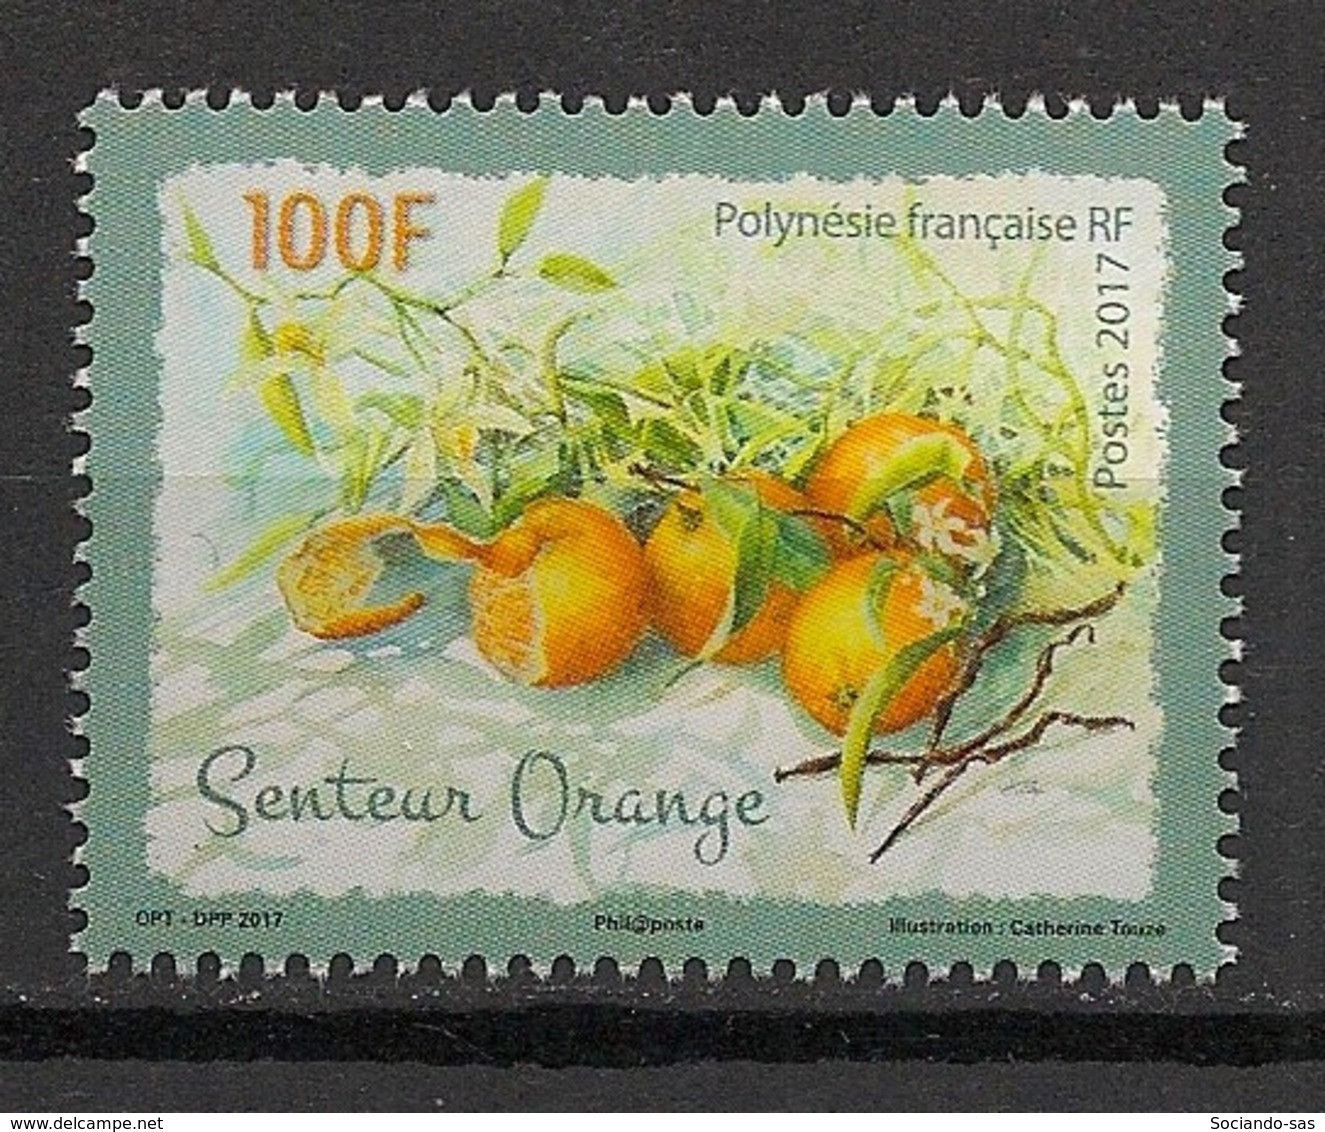 POLYNESIE - 2017 - N°YT. 1155 - Fruits / Orange - Neuf Luxe ** / MNH / Postfrisch - Nuovi